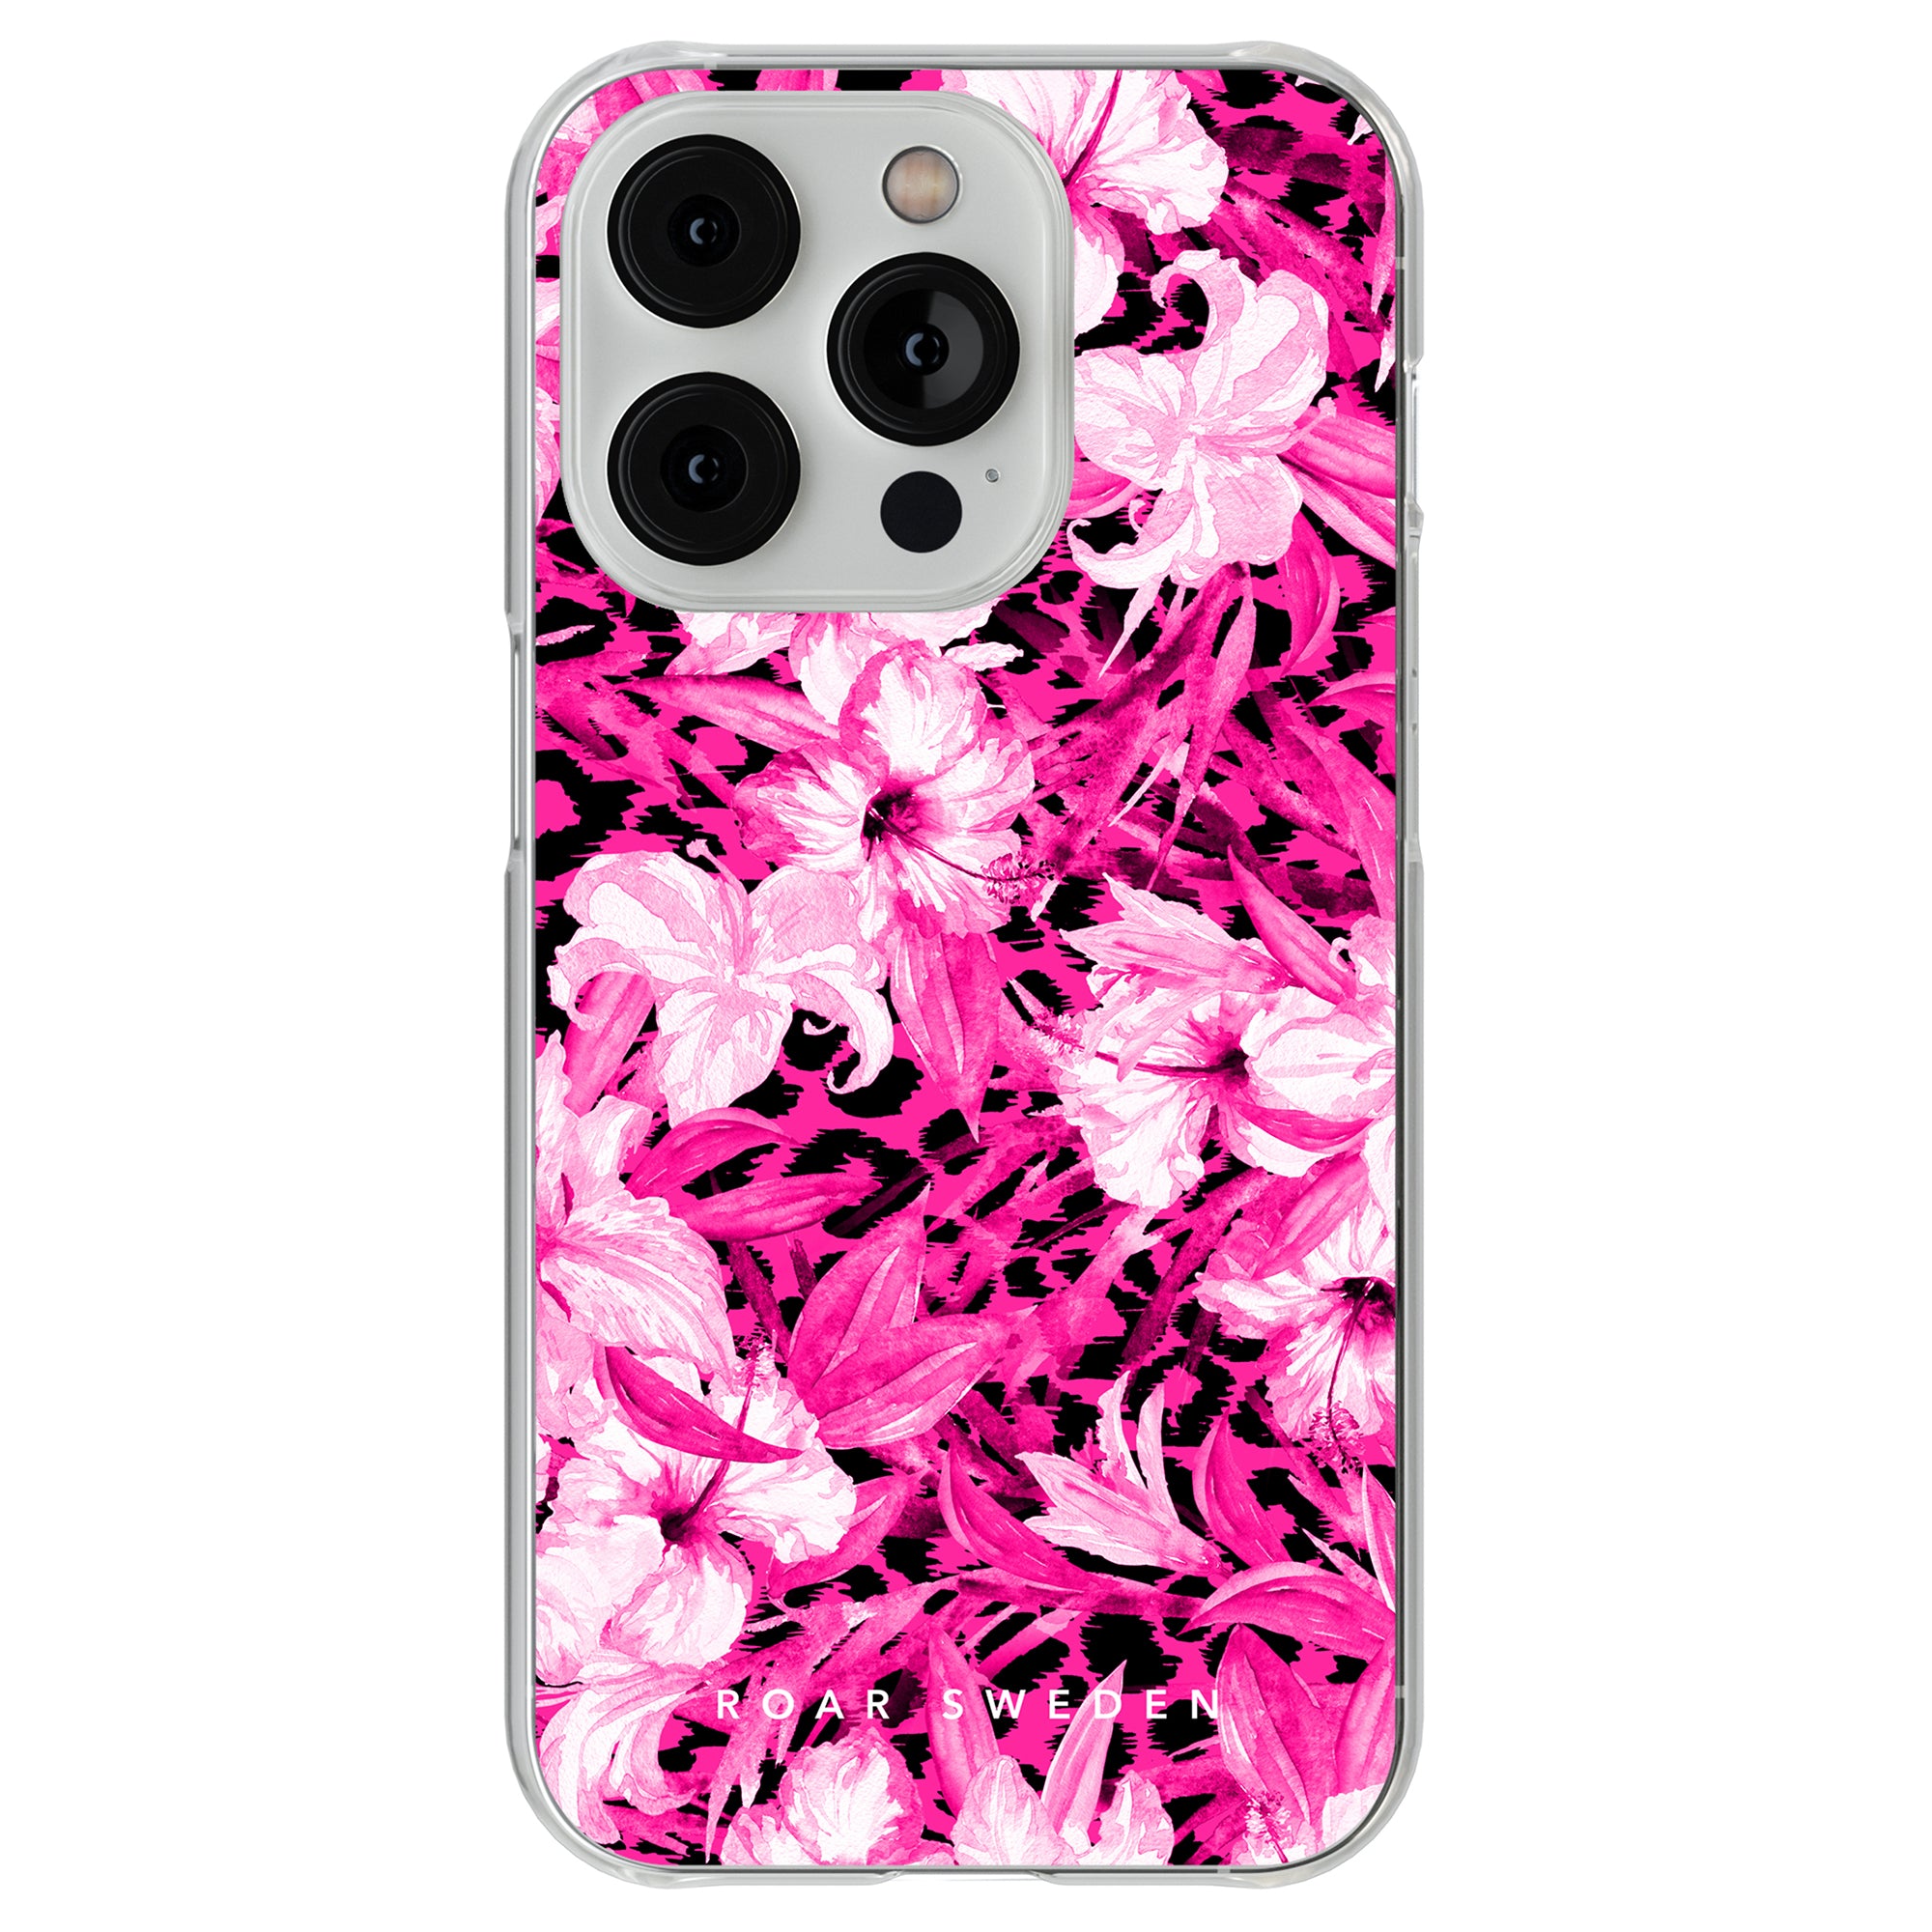 Ett Hibiscus Leo - Clear Case mobilfodral med rosa och svarta blommor, vilket ger det en tropisk look.